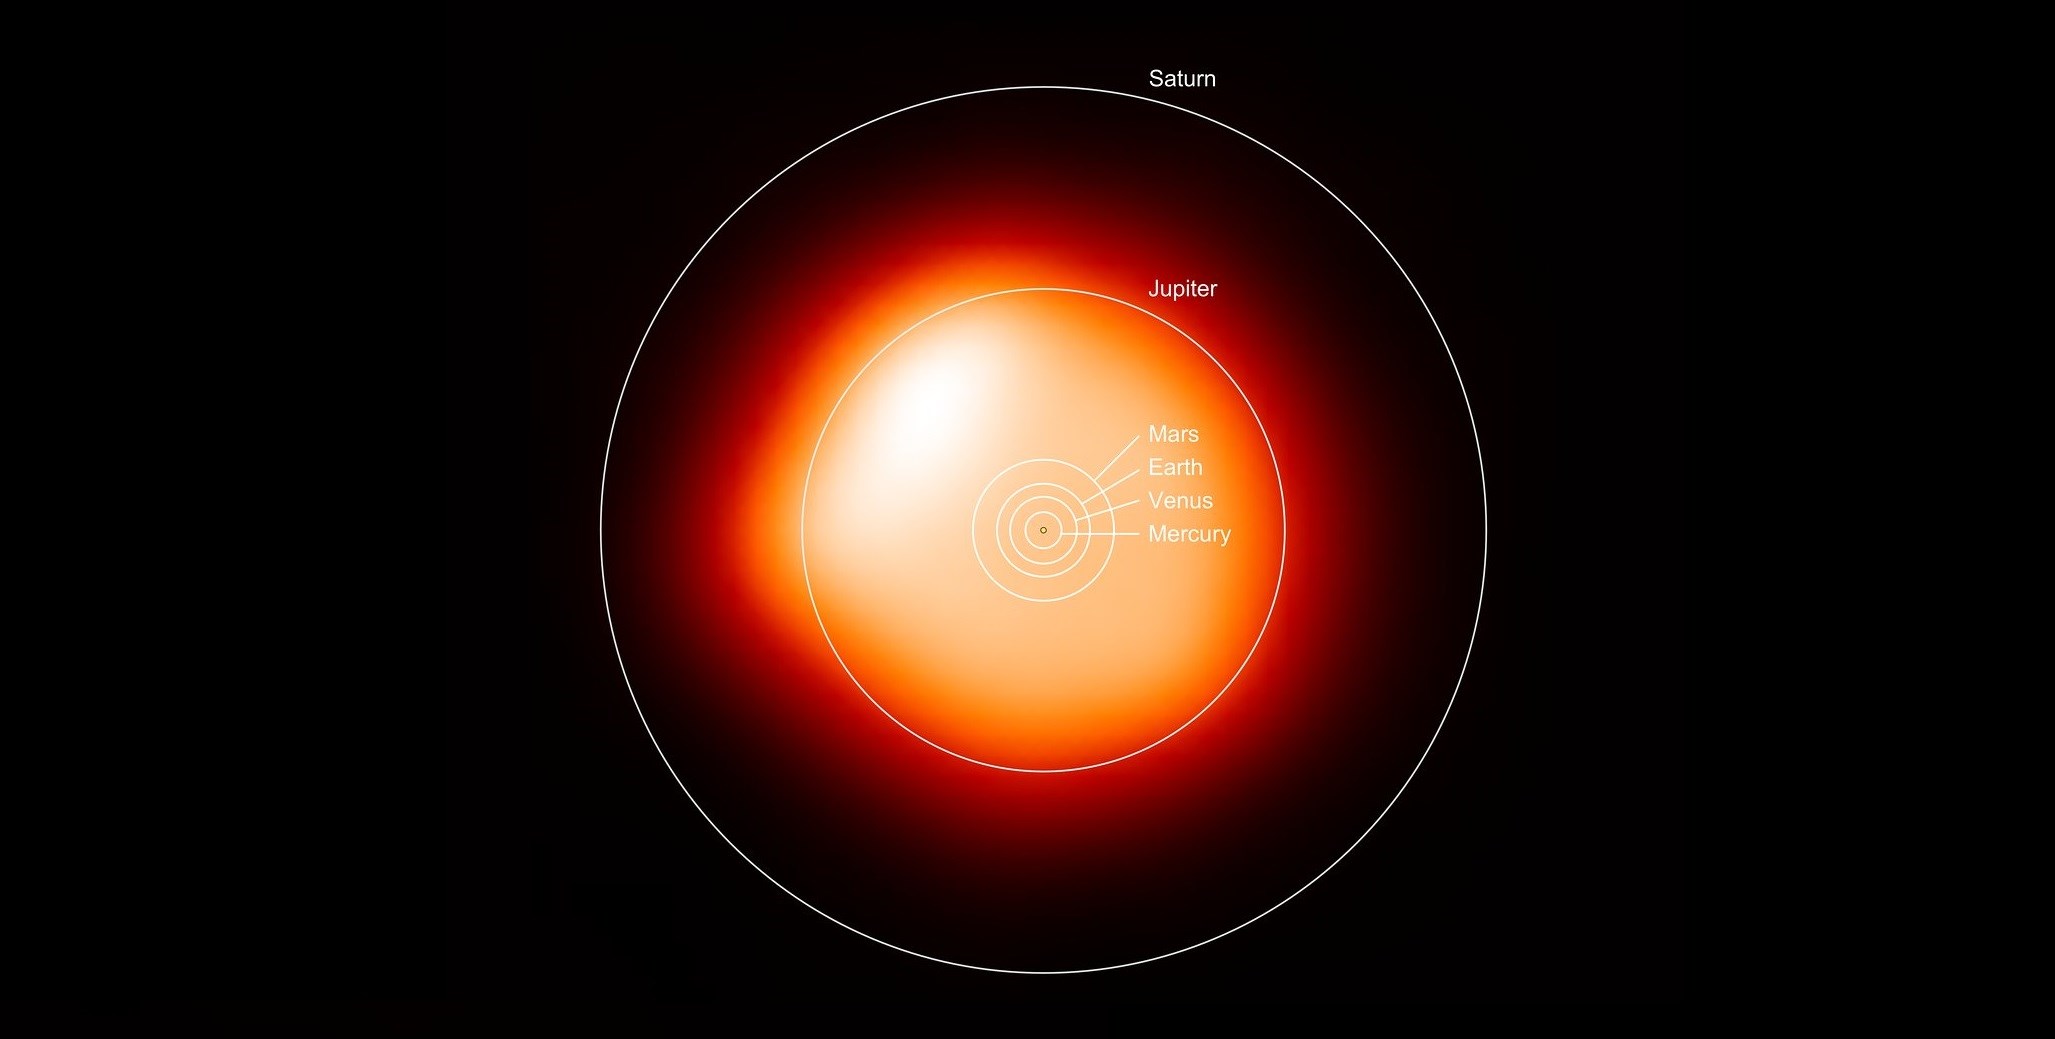 Dev yıldız Betelgeuse, benzeri görülmemiş patlamaya şahit oldu